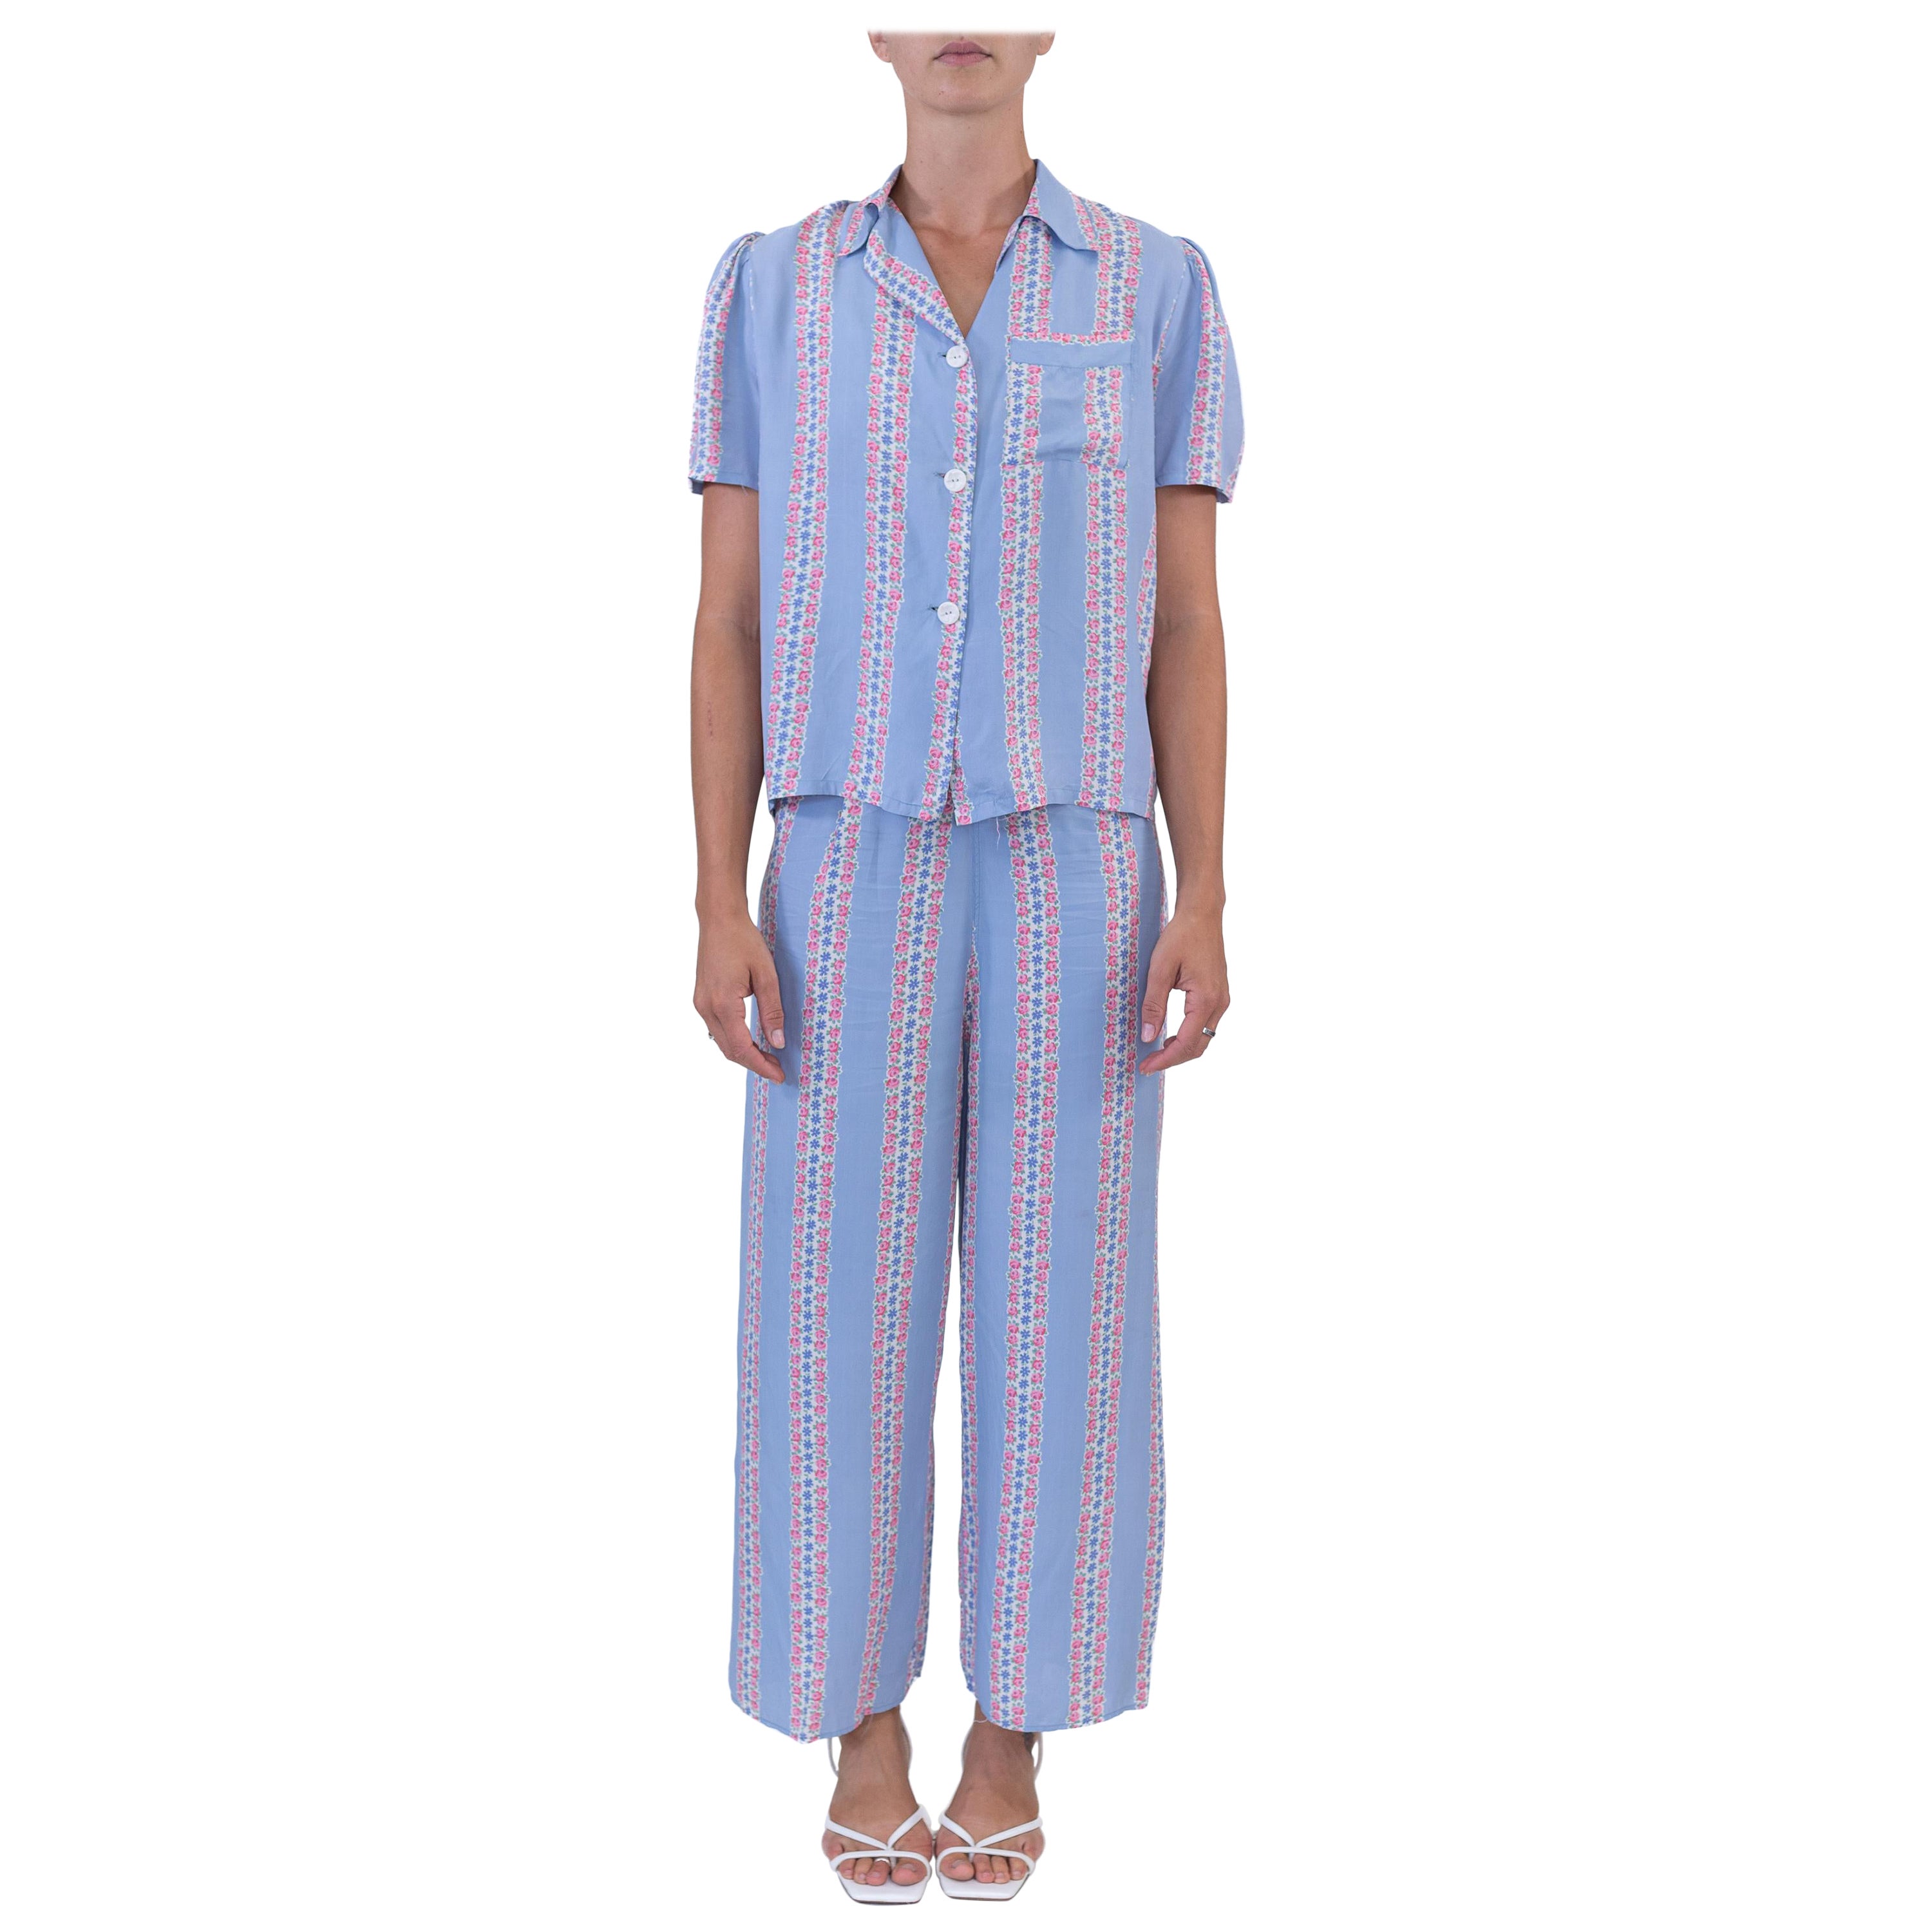 Haut et pyjama SLUMBERJAM des années 1940 en rayonne rayée à imprimé floral bleu et rose